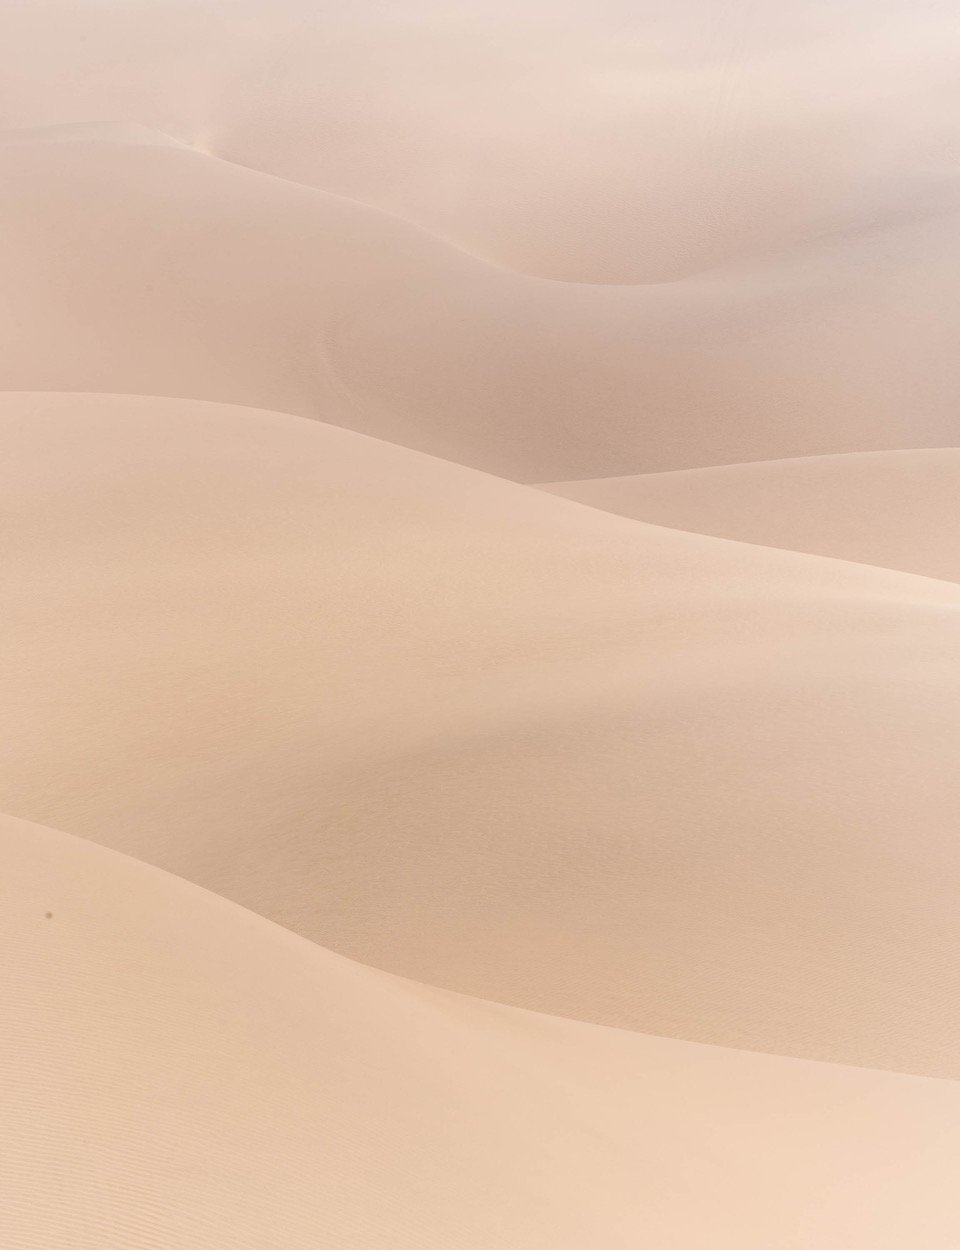 Wavy sand of desert, Namibia #23, Africa